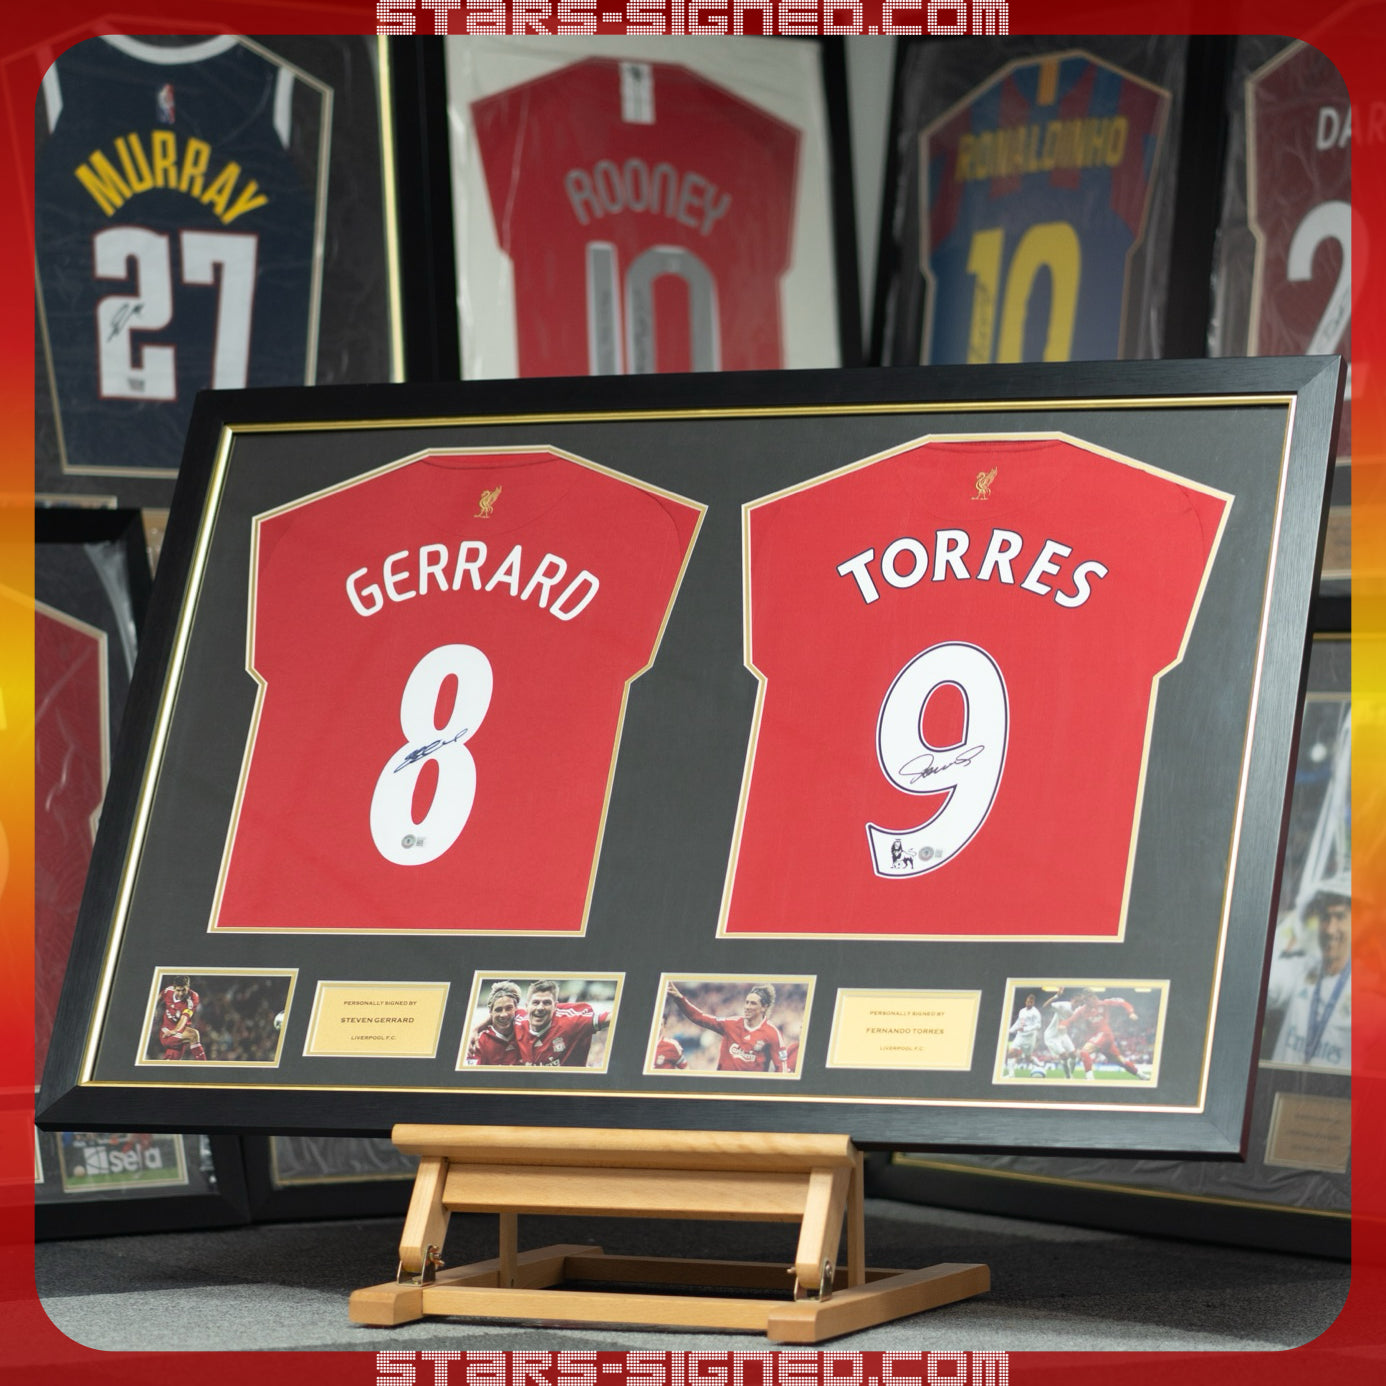 謝拉特 Steven Gerrard, 費蘭度·托利斯 Fernando Torres 利物浦主場球衣雙裱框 (背簽)